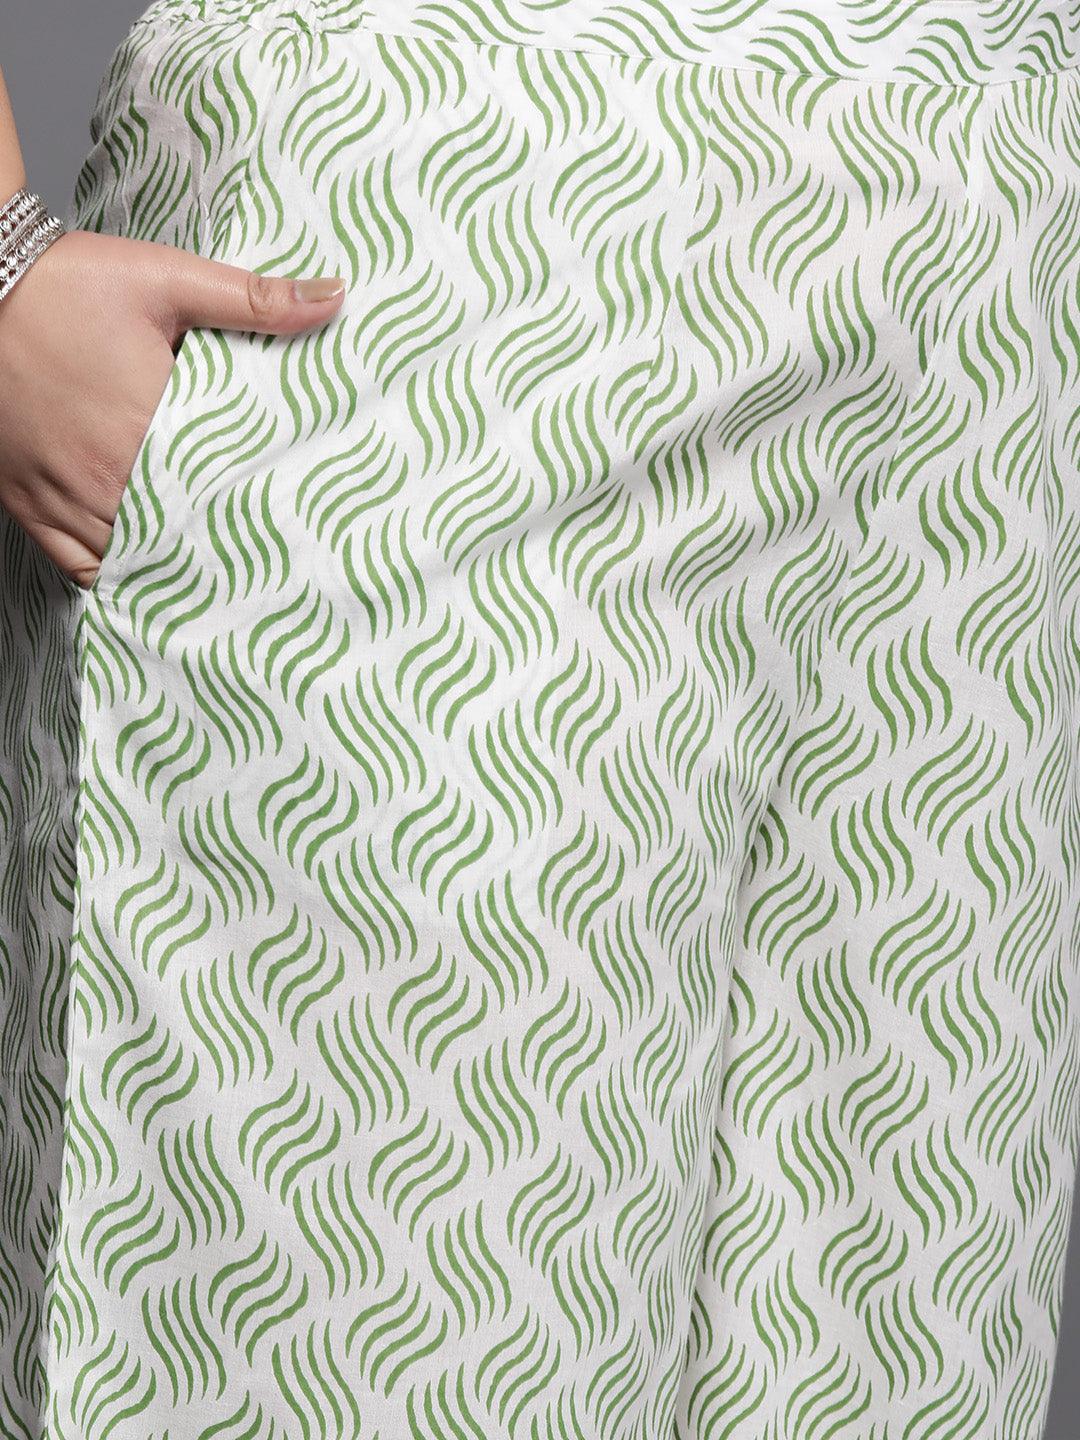 Plus Size Green Printed Cotton Suit Set - Libas